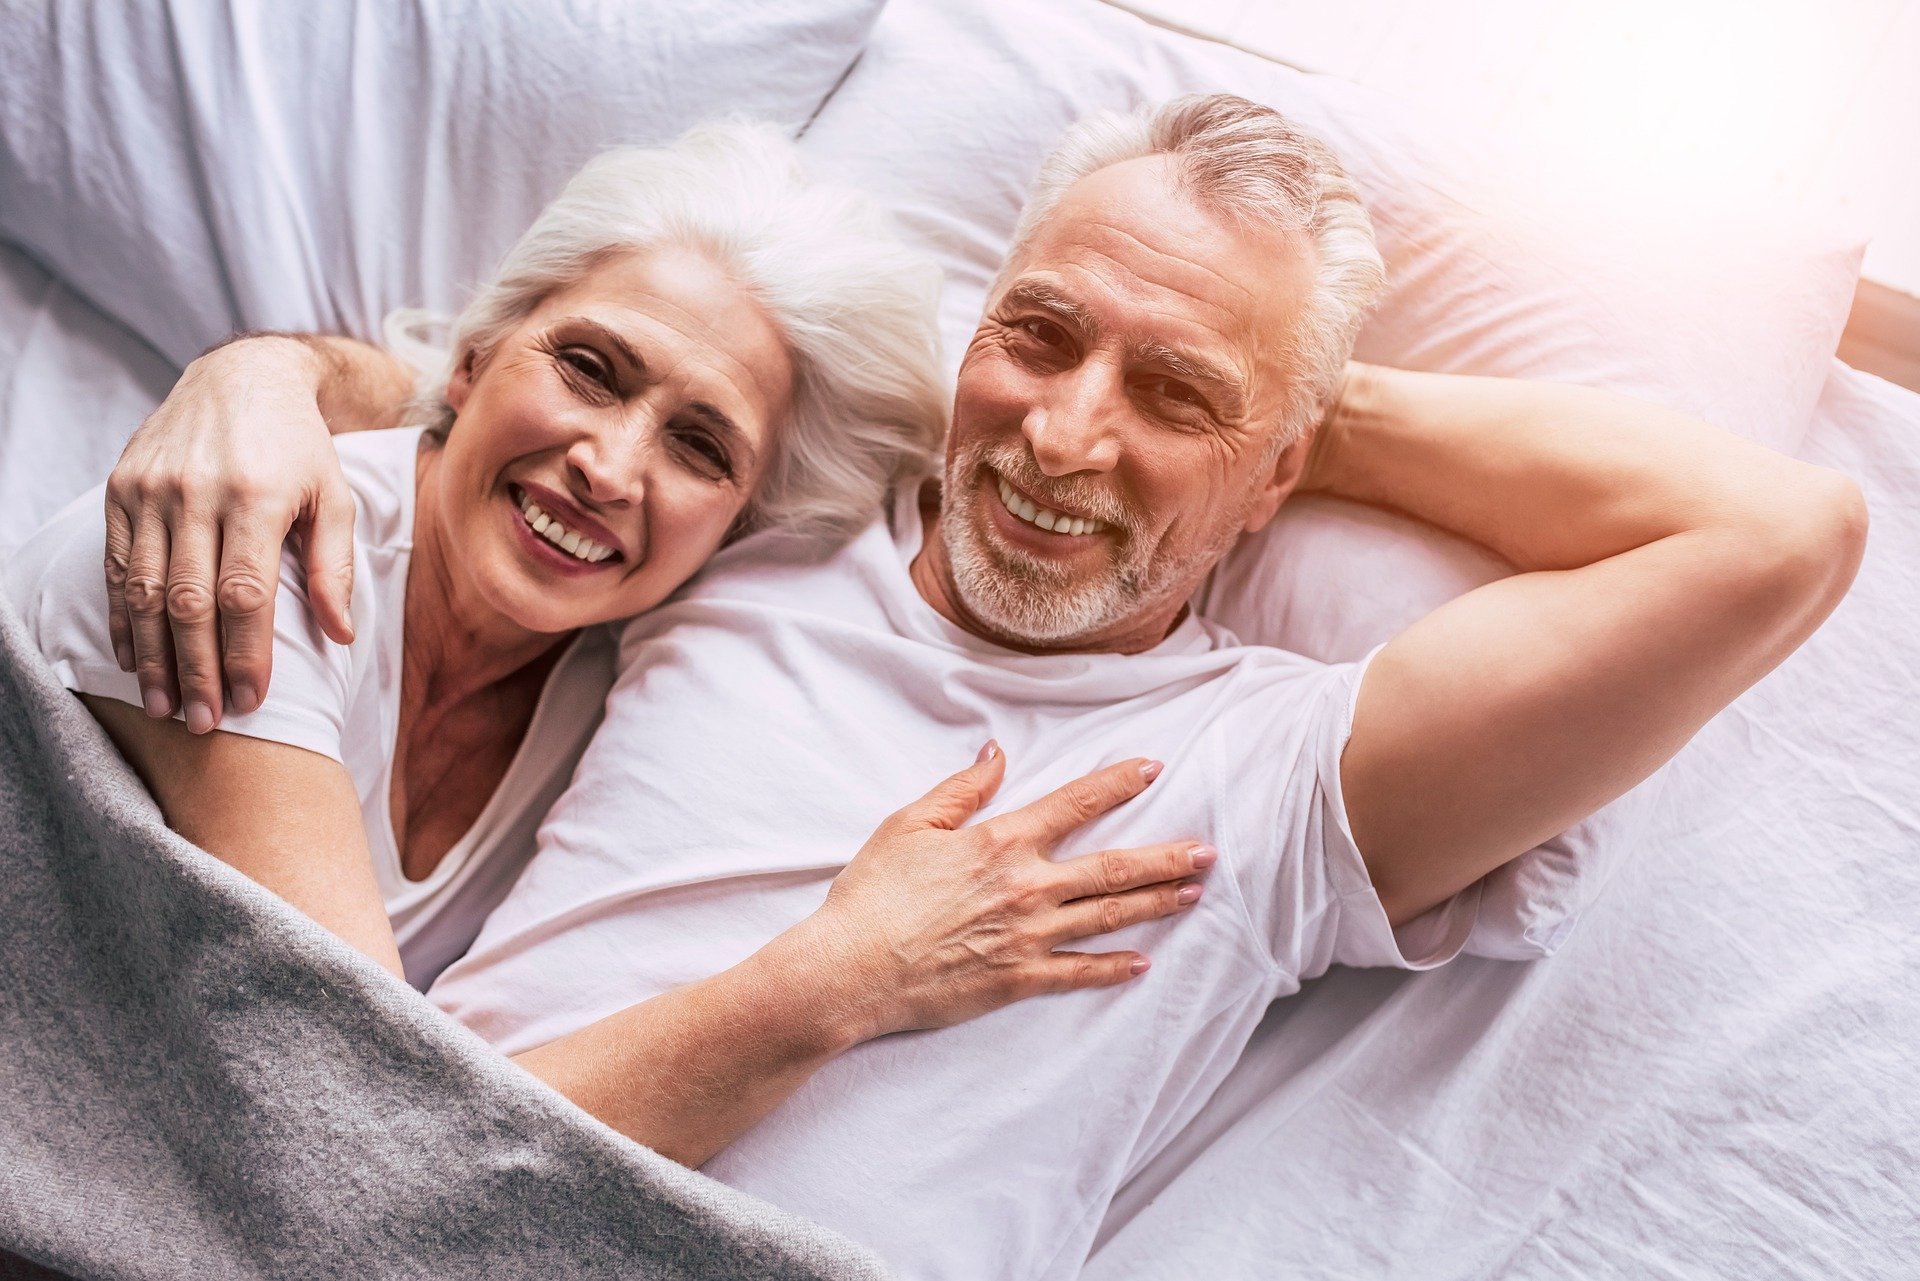 Guter Schlaf und ein vertrautes Miteinander sollte durch eine Inkontinenz nicht beeinträchtigt werden. Dank vieler Hilfsmittel können wir auch mit diesem Problem gut alt werden. Bildquelle: © Pixabay.com